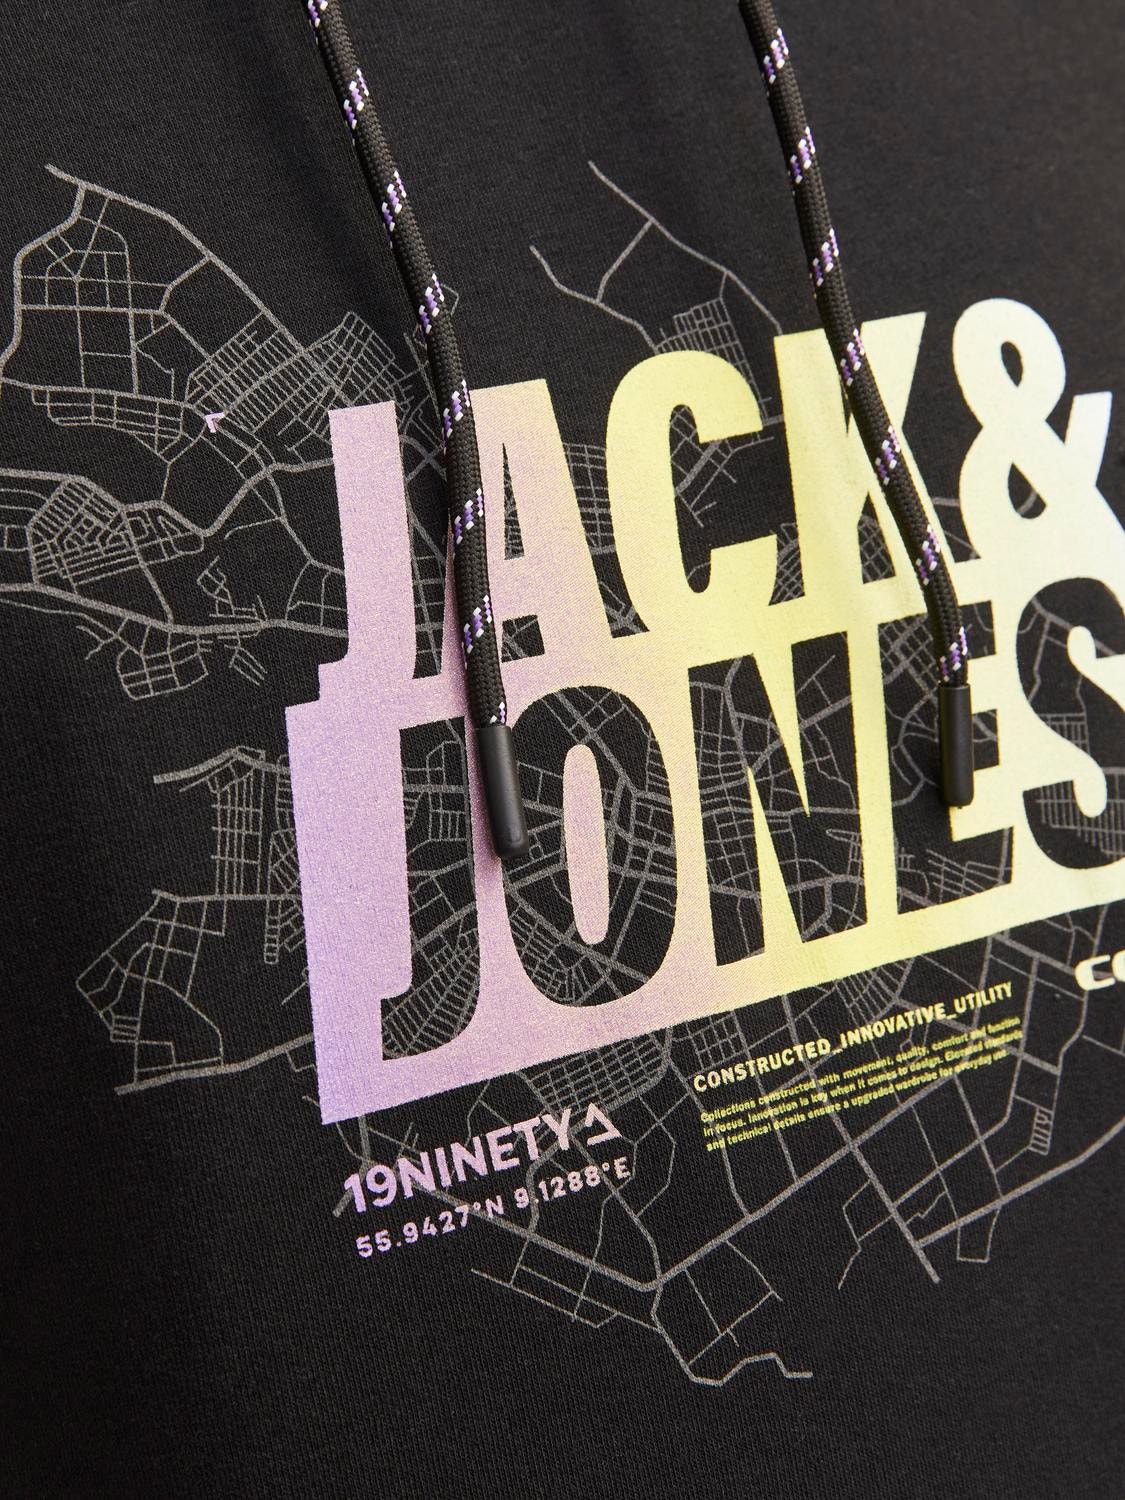 Jack & Jones Sweat à capuche Imprimé -Black - 12258049